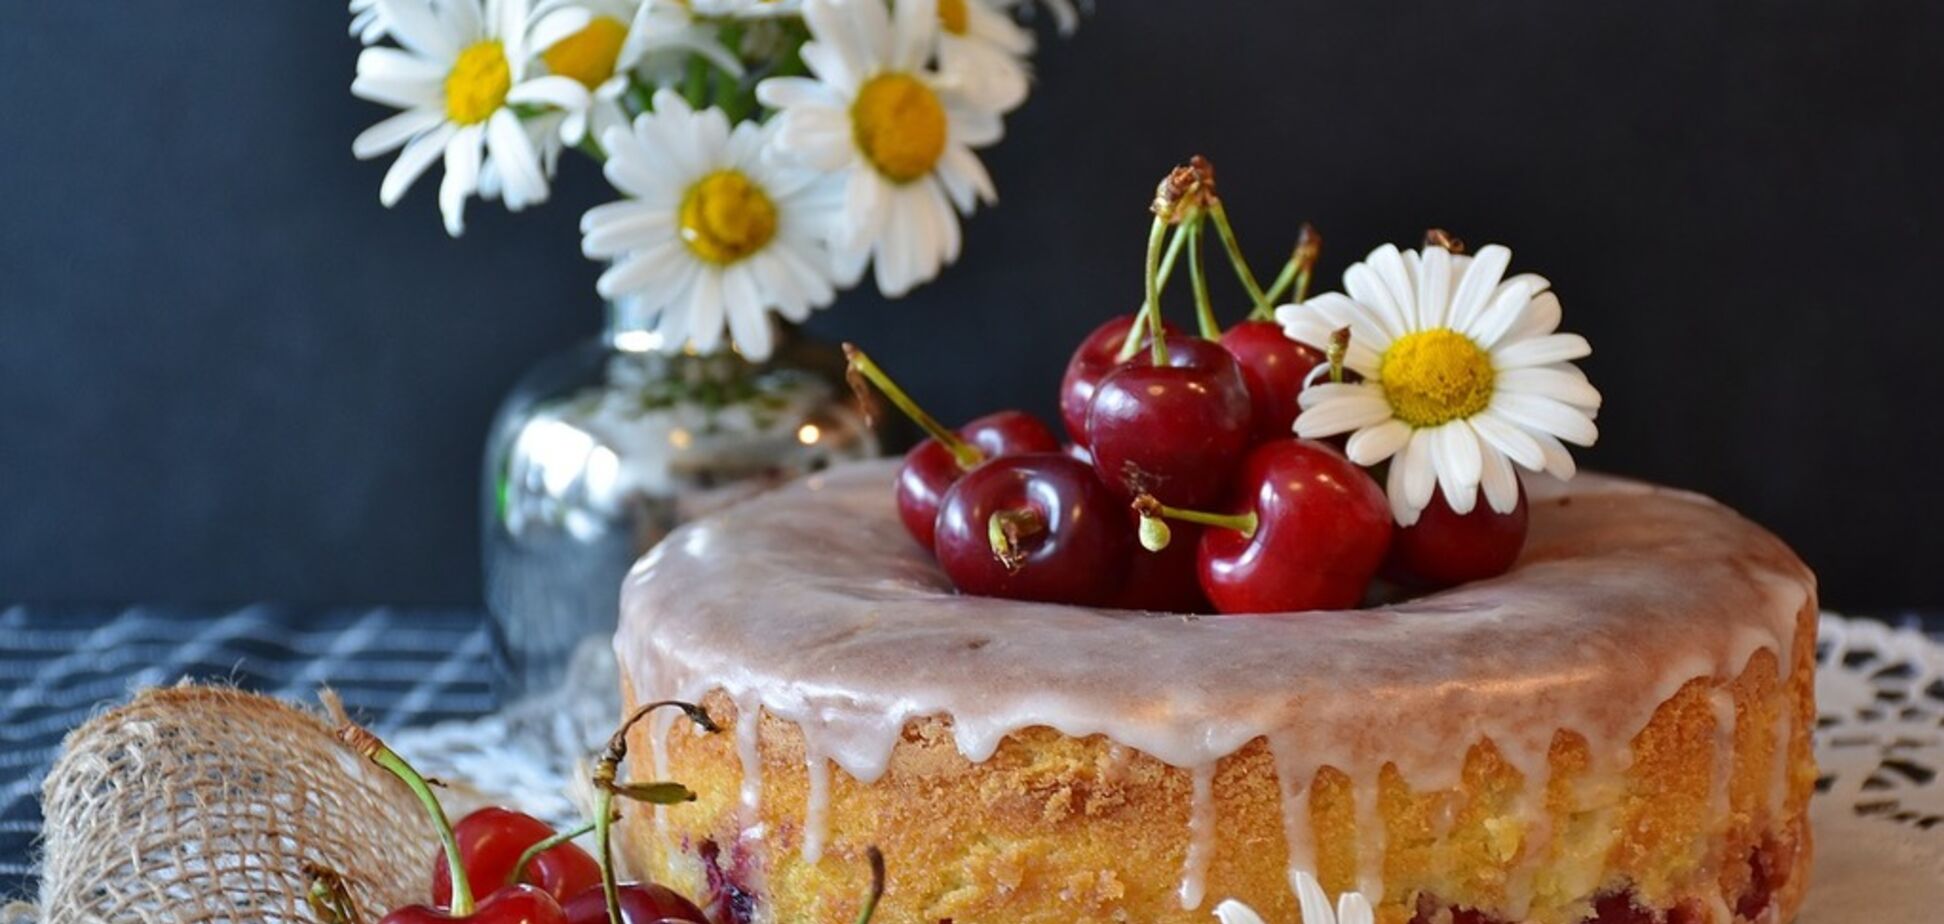 Вишневый торт с анисом и лимоном: рецепт десерта, перед которым трудно устоять